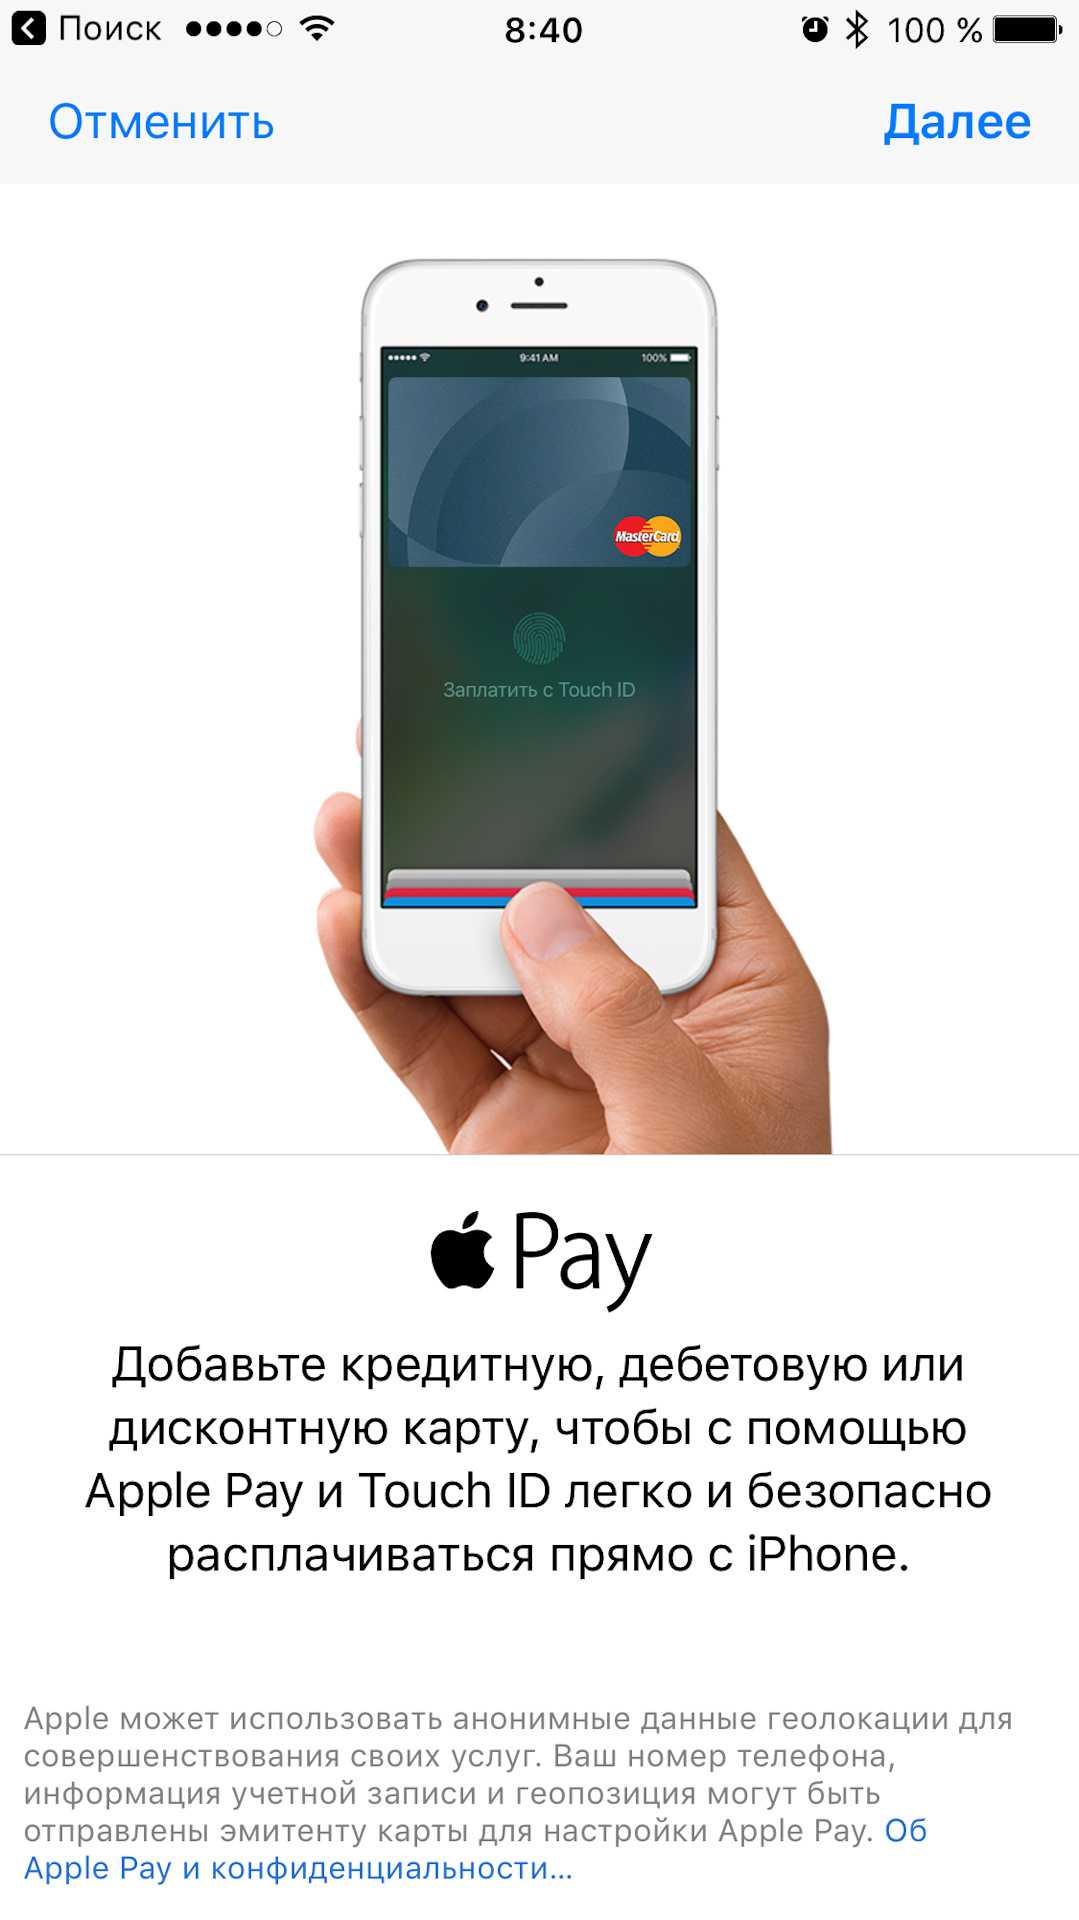 Карта на айфон для оплаты телефоном. Карта Apple pay. Что такое Apple pay на айфоне. Оплата картой через айфон. Как пользоваться Apple pay.